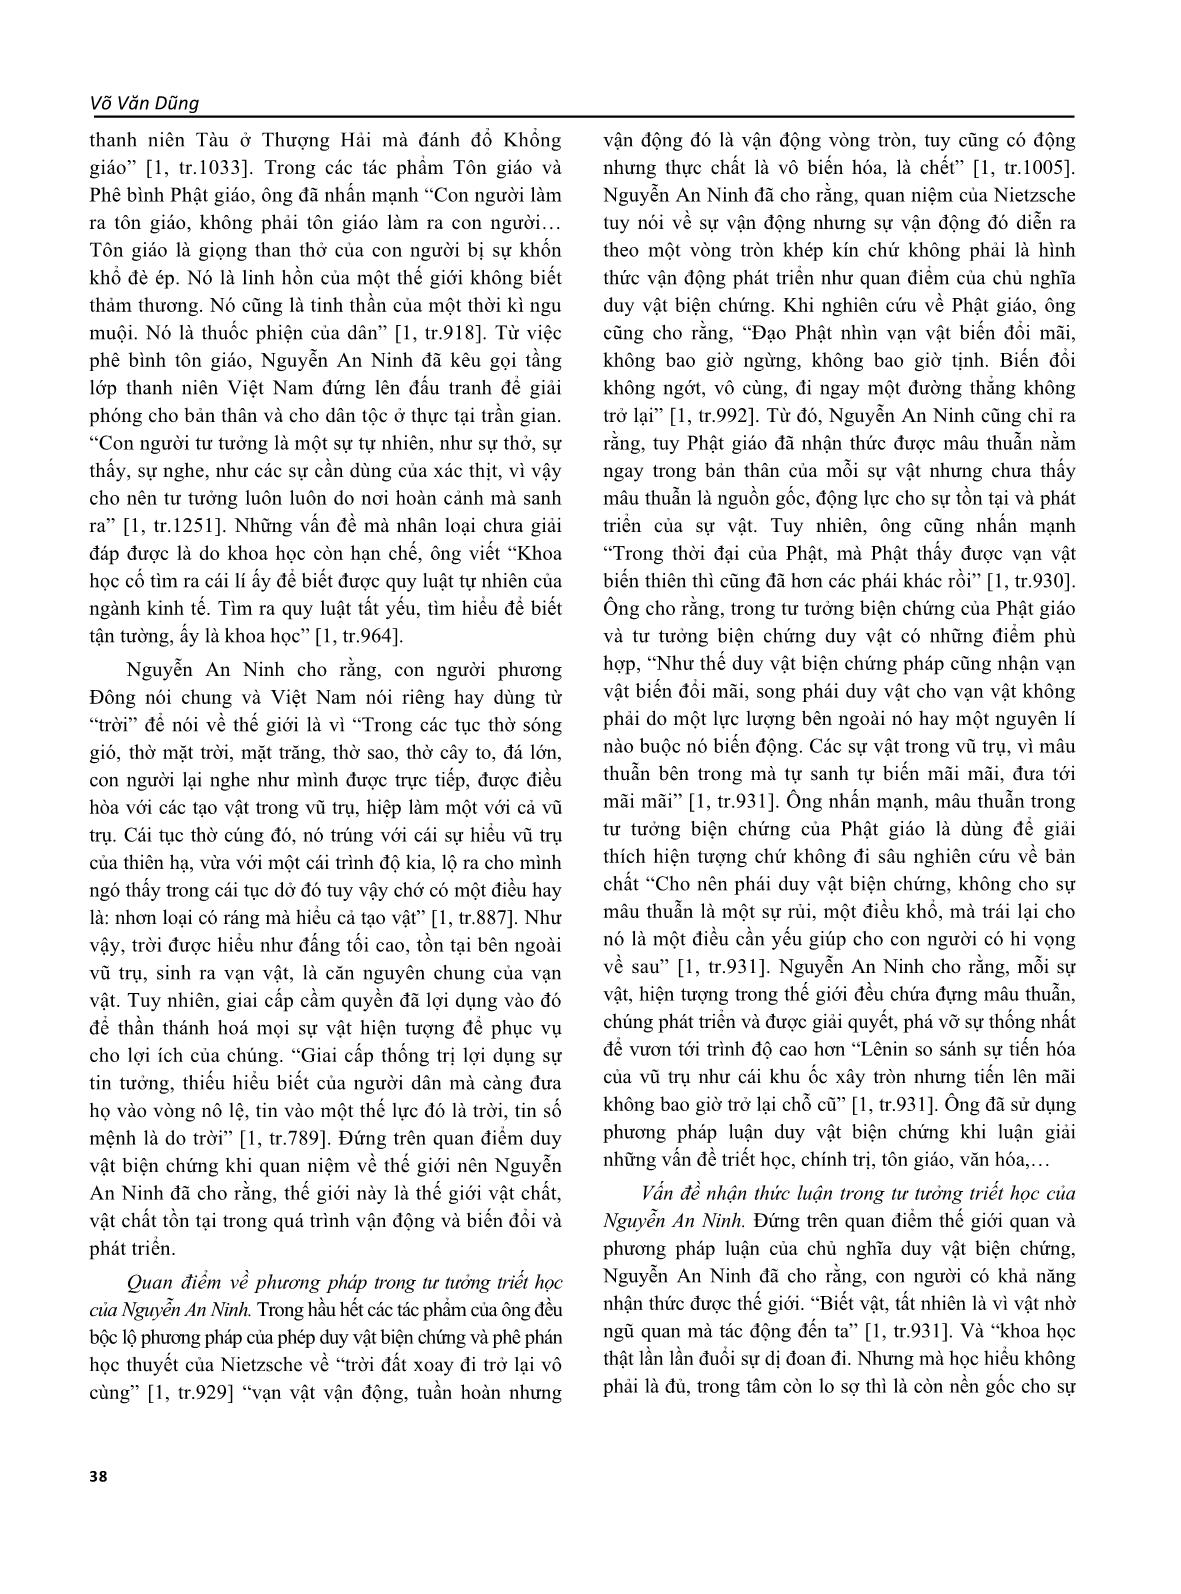 Tư tưởng triết học của Nguyễn An Ninh trang 3